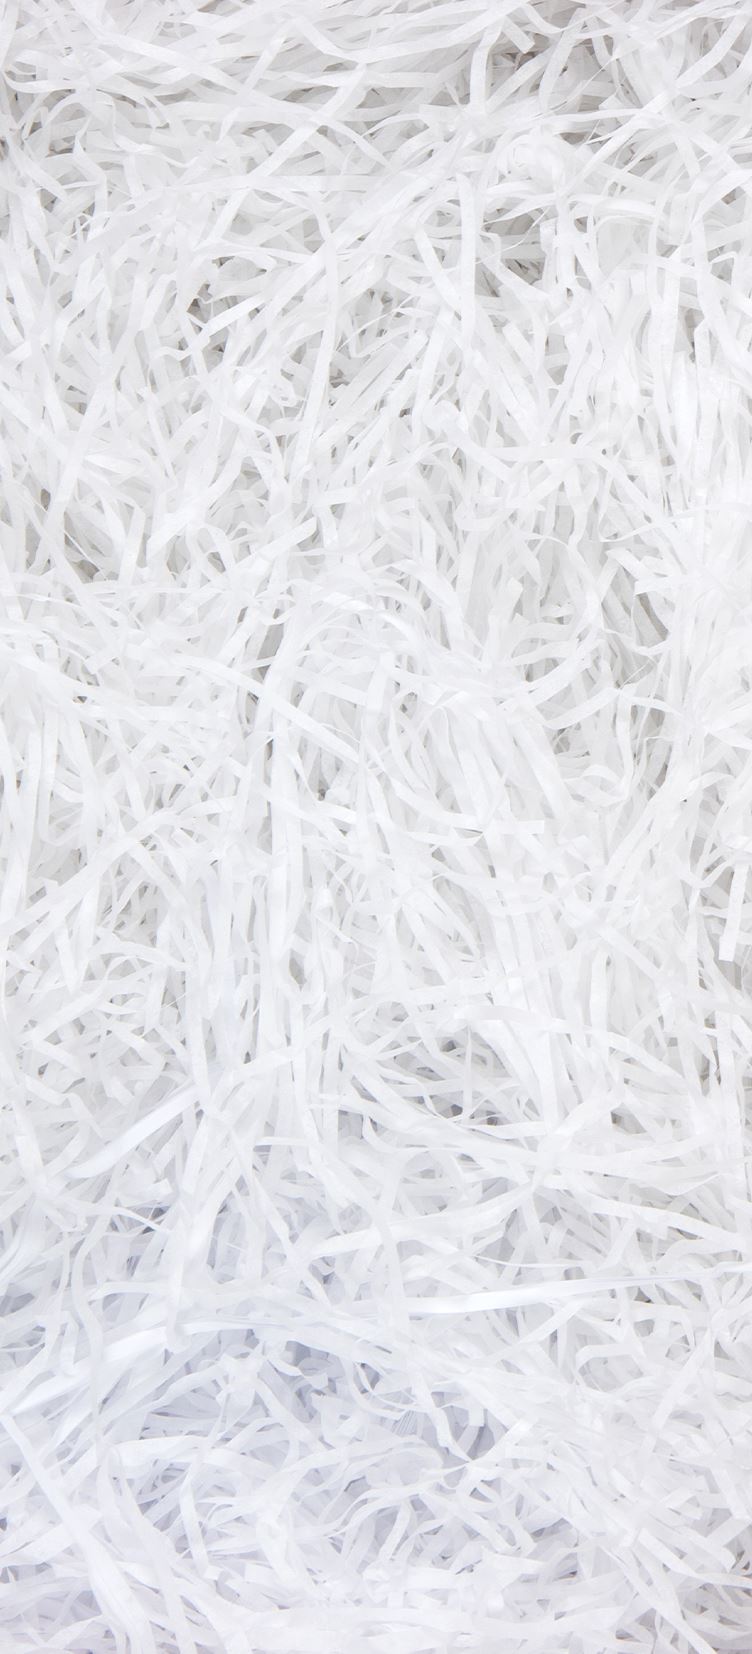 A mass of white shredded tissue paper.